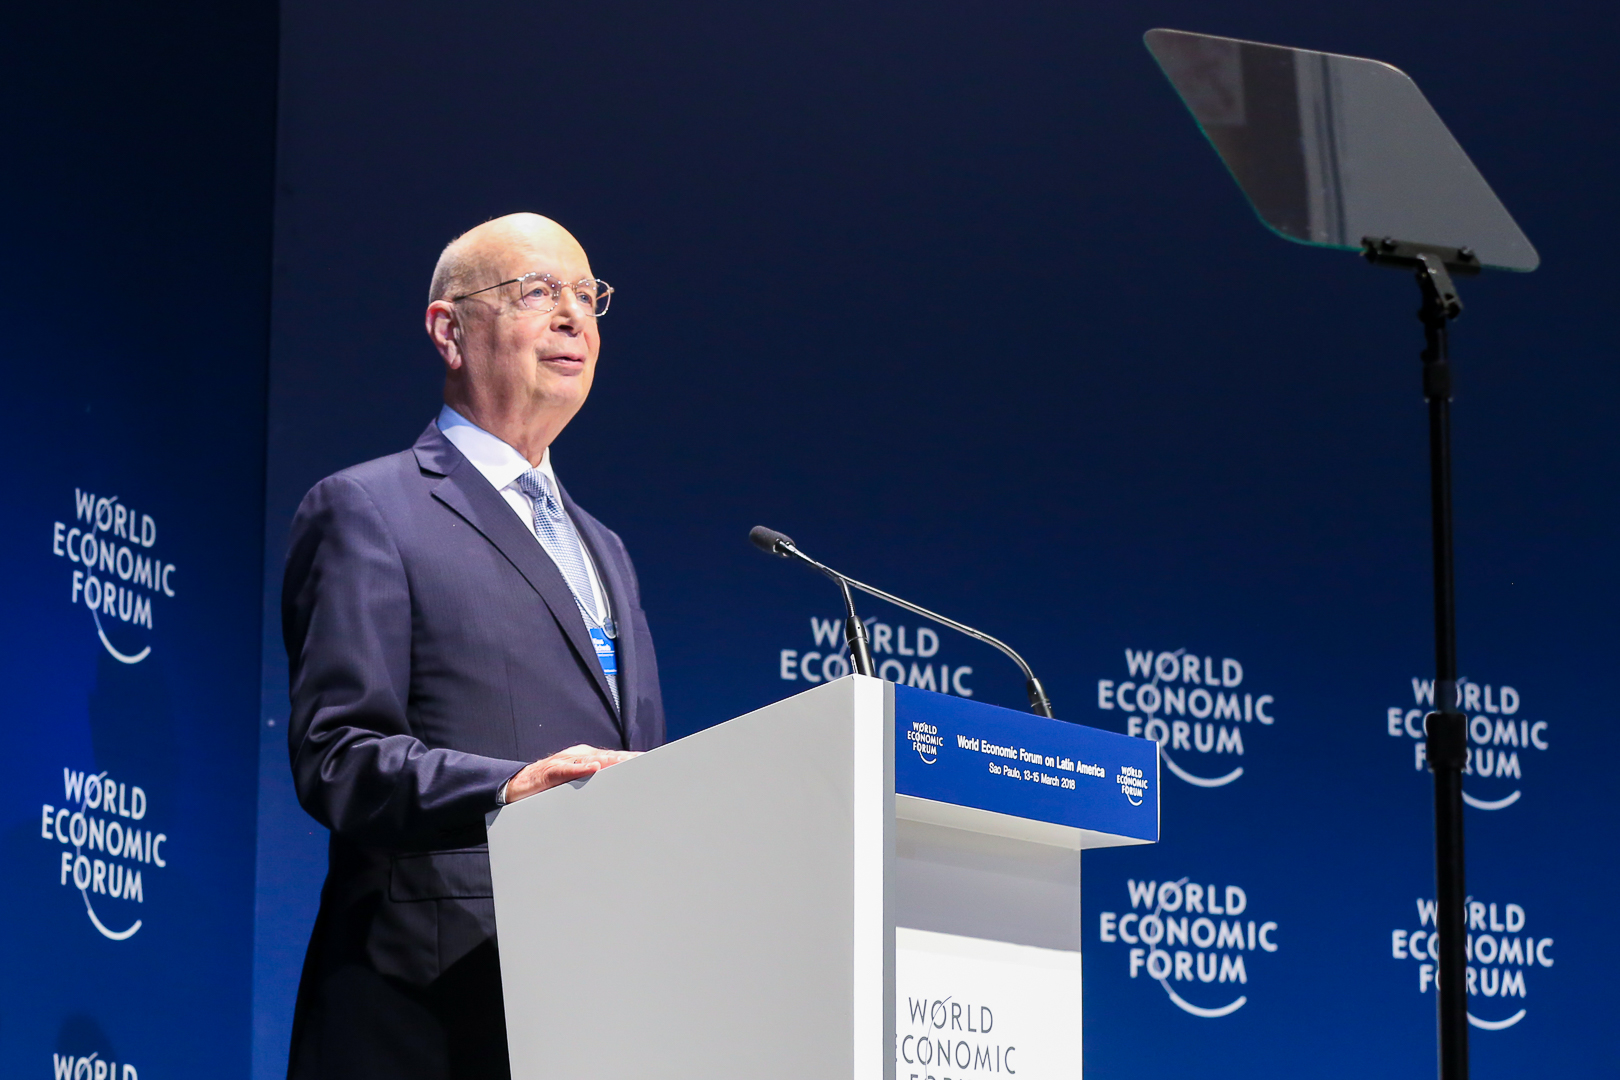 WEF-Teilnehmerliste aufgeflogen: „Der Standard“-Chef und Austro-Minister dabei